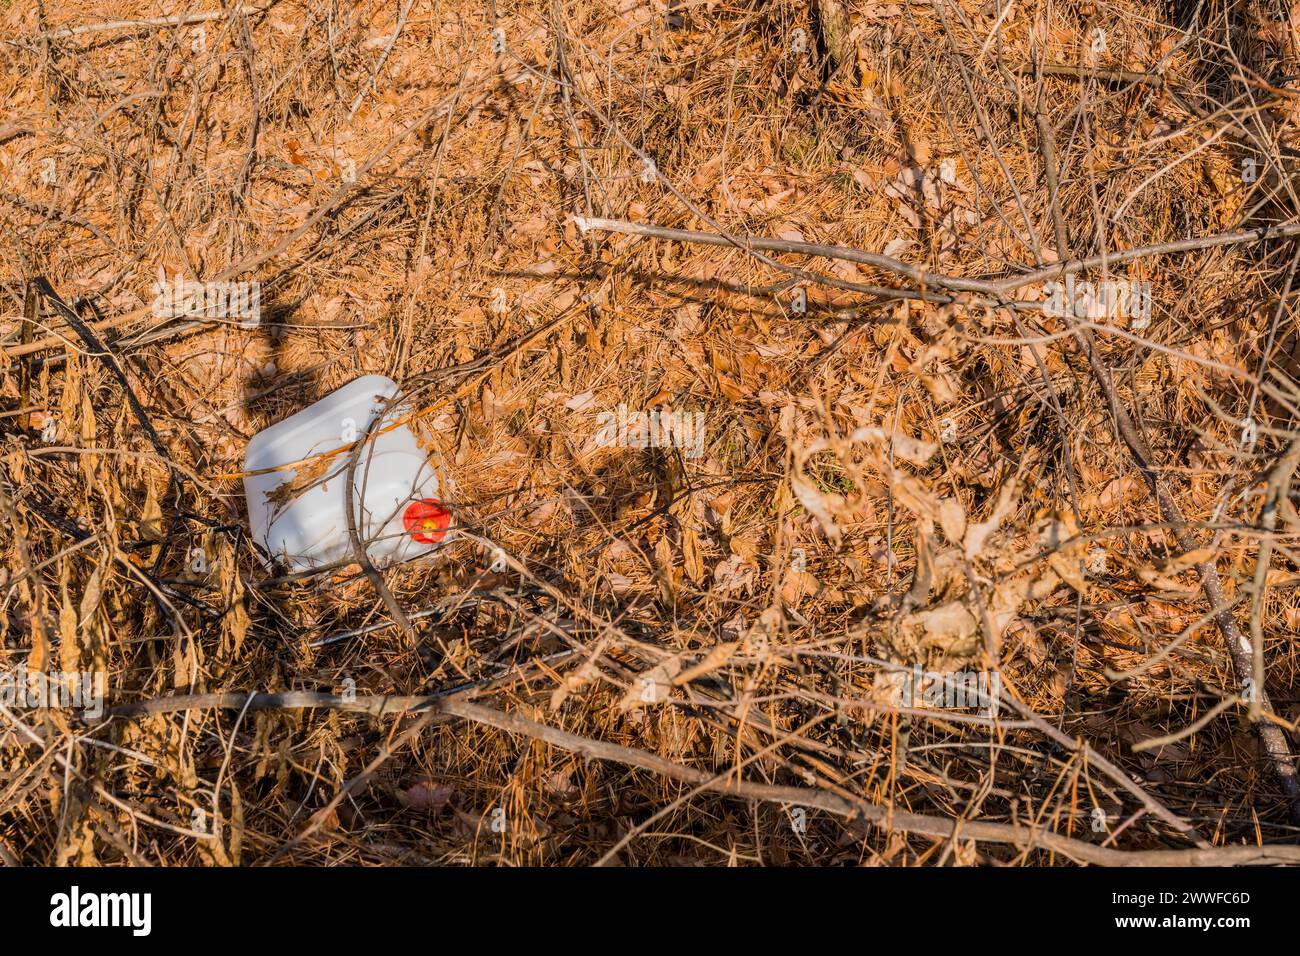 Un secchio bianco con un'etichetta rossa si trova abbandonato nella brushwood, simboleggiando l'abbandono, in Corea del Sud Foto Stock